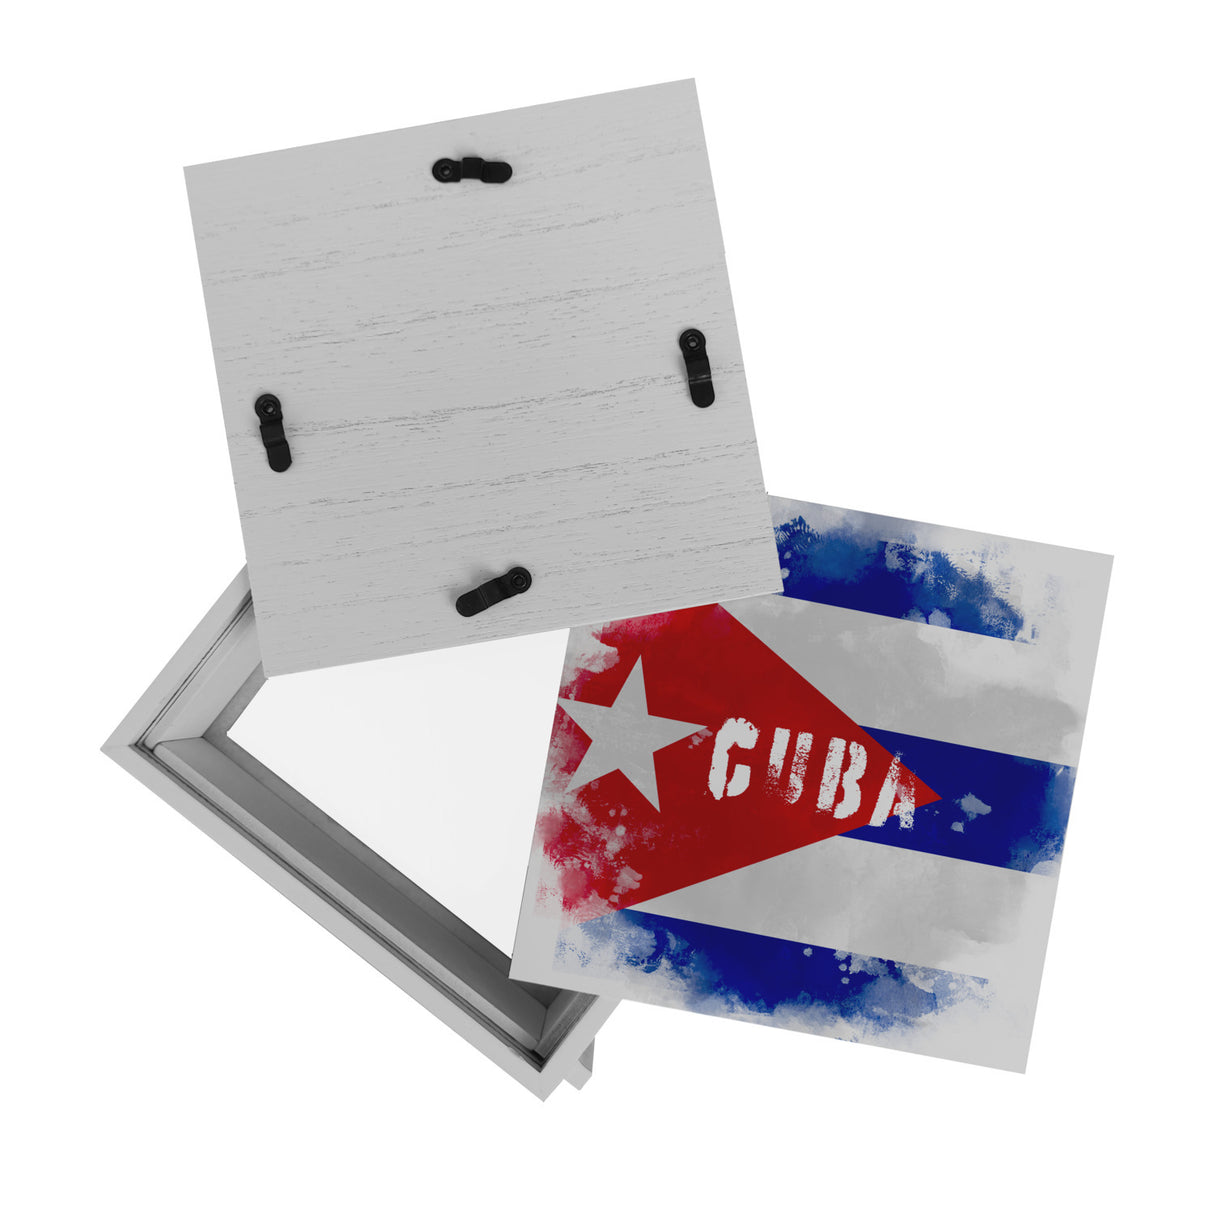 Spardose mit Kuba-Flagge im Used Look - Sparschwein für Urlauber